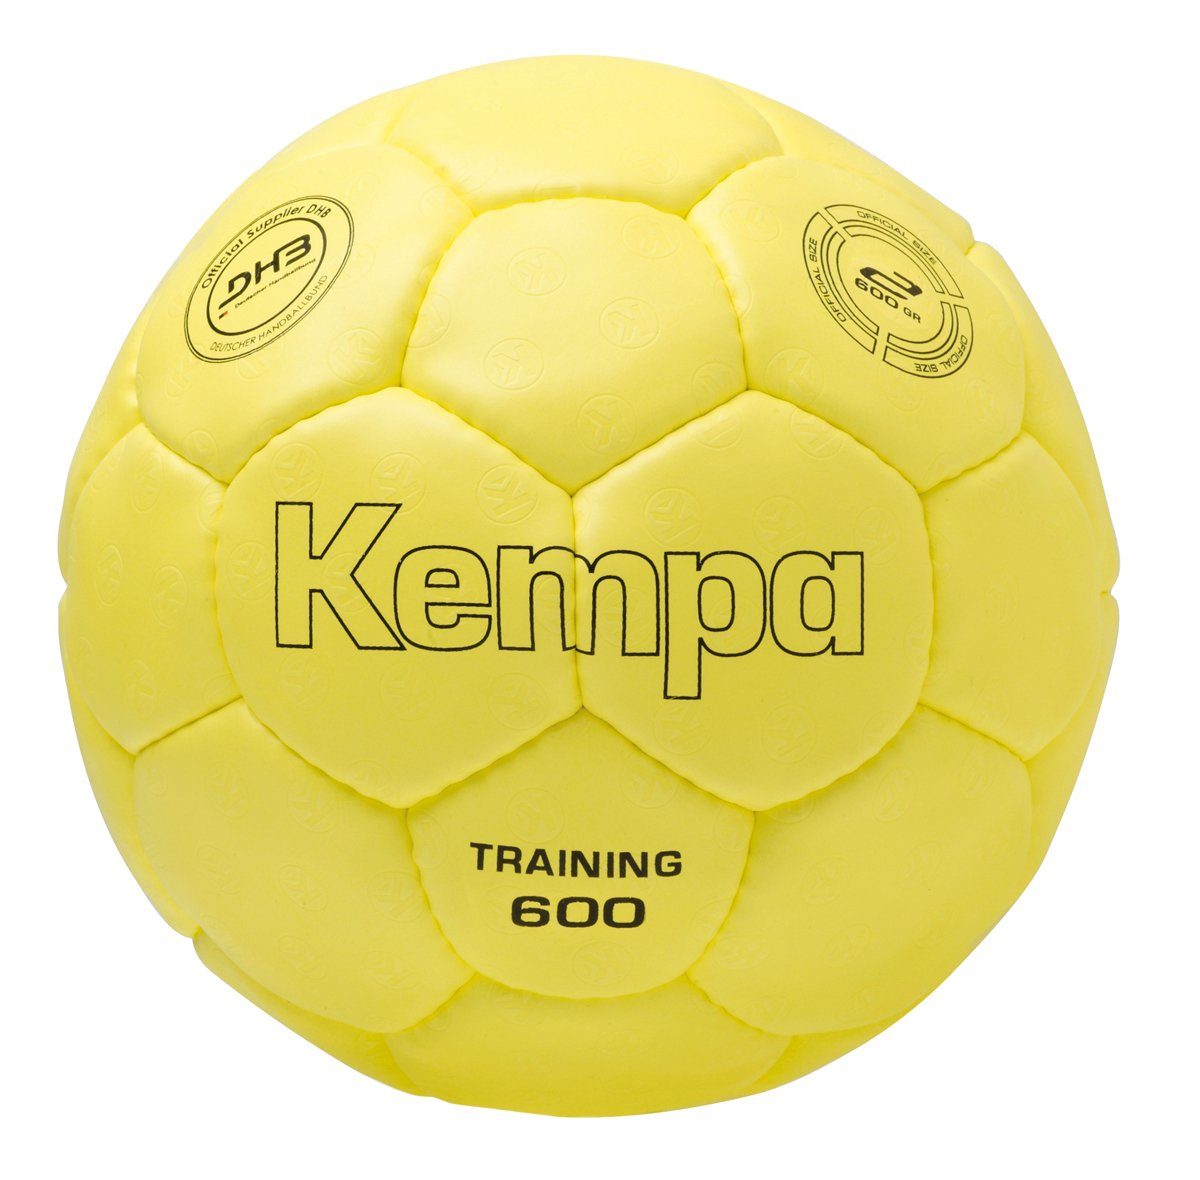 Kempa Handball Rucksäcke online kaufen | OTTO